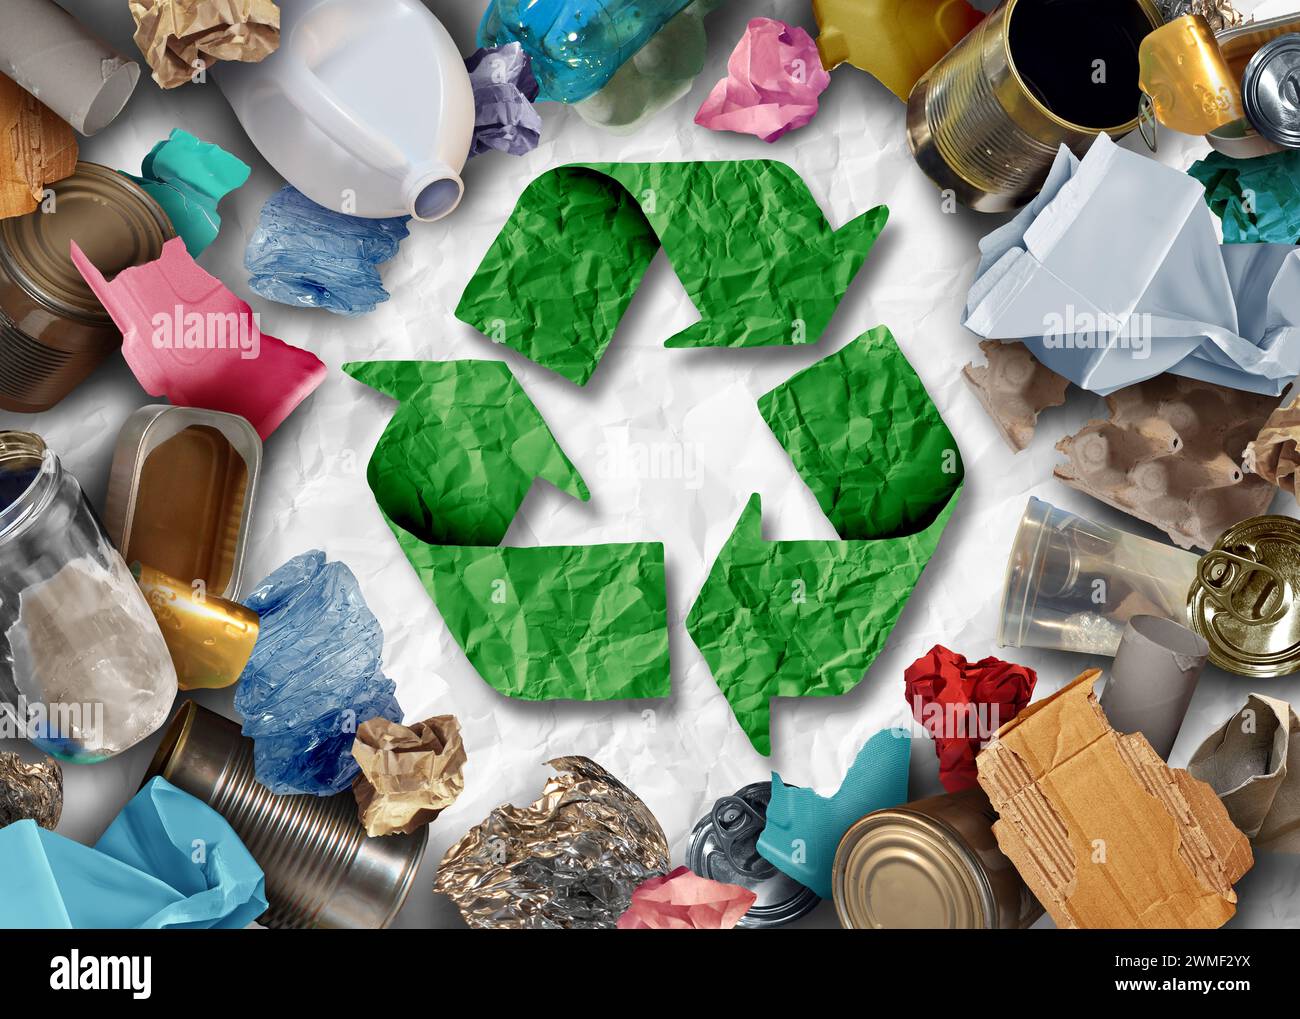 Recyclage problème social pour recycler les déchets et les ordures en tant qu'articles réutilisables gestion comme vieux papier verre métal et plastique jetés dans un conteneur à ordures Banque D'Images